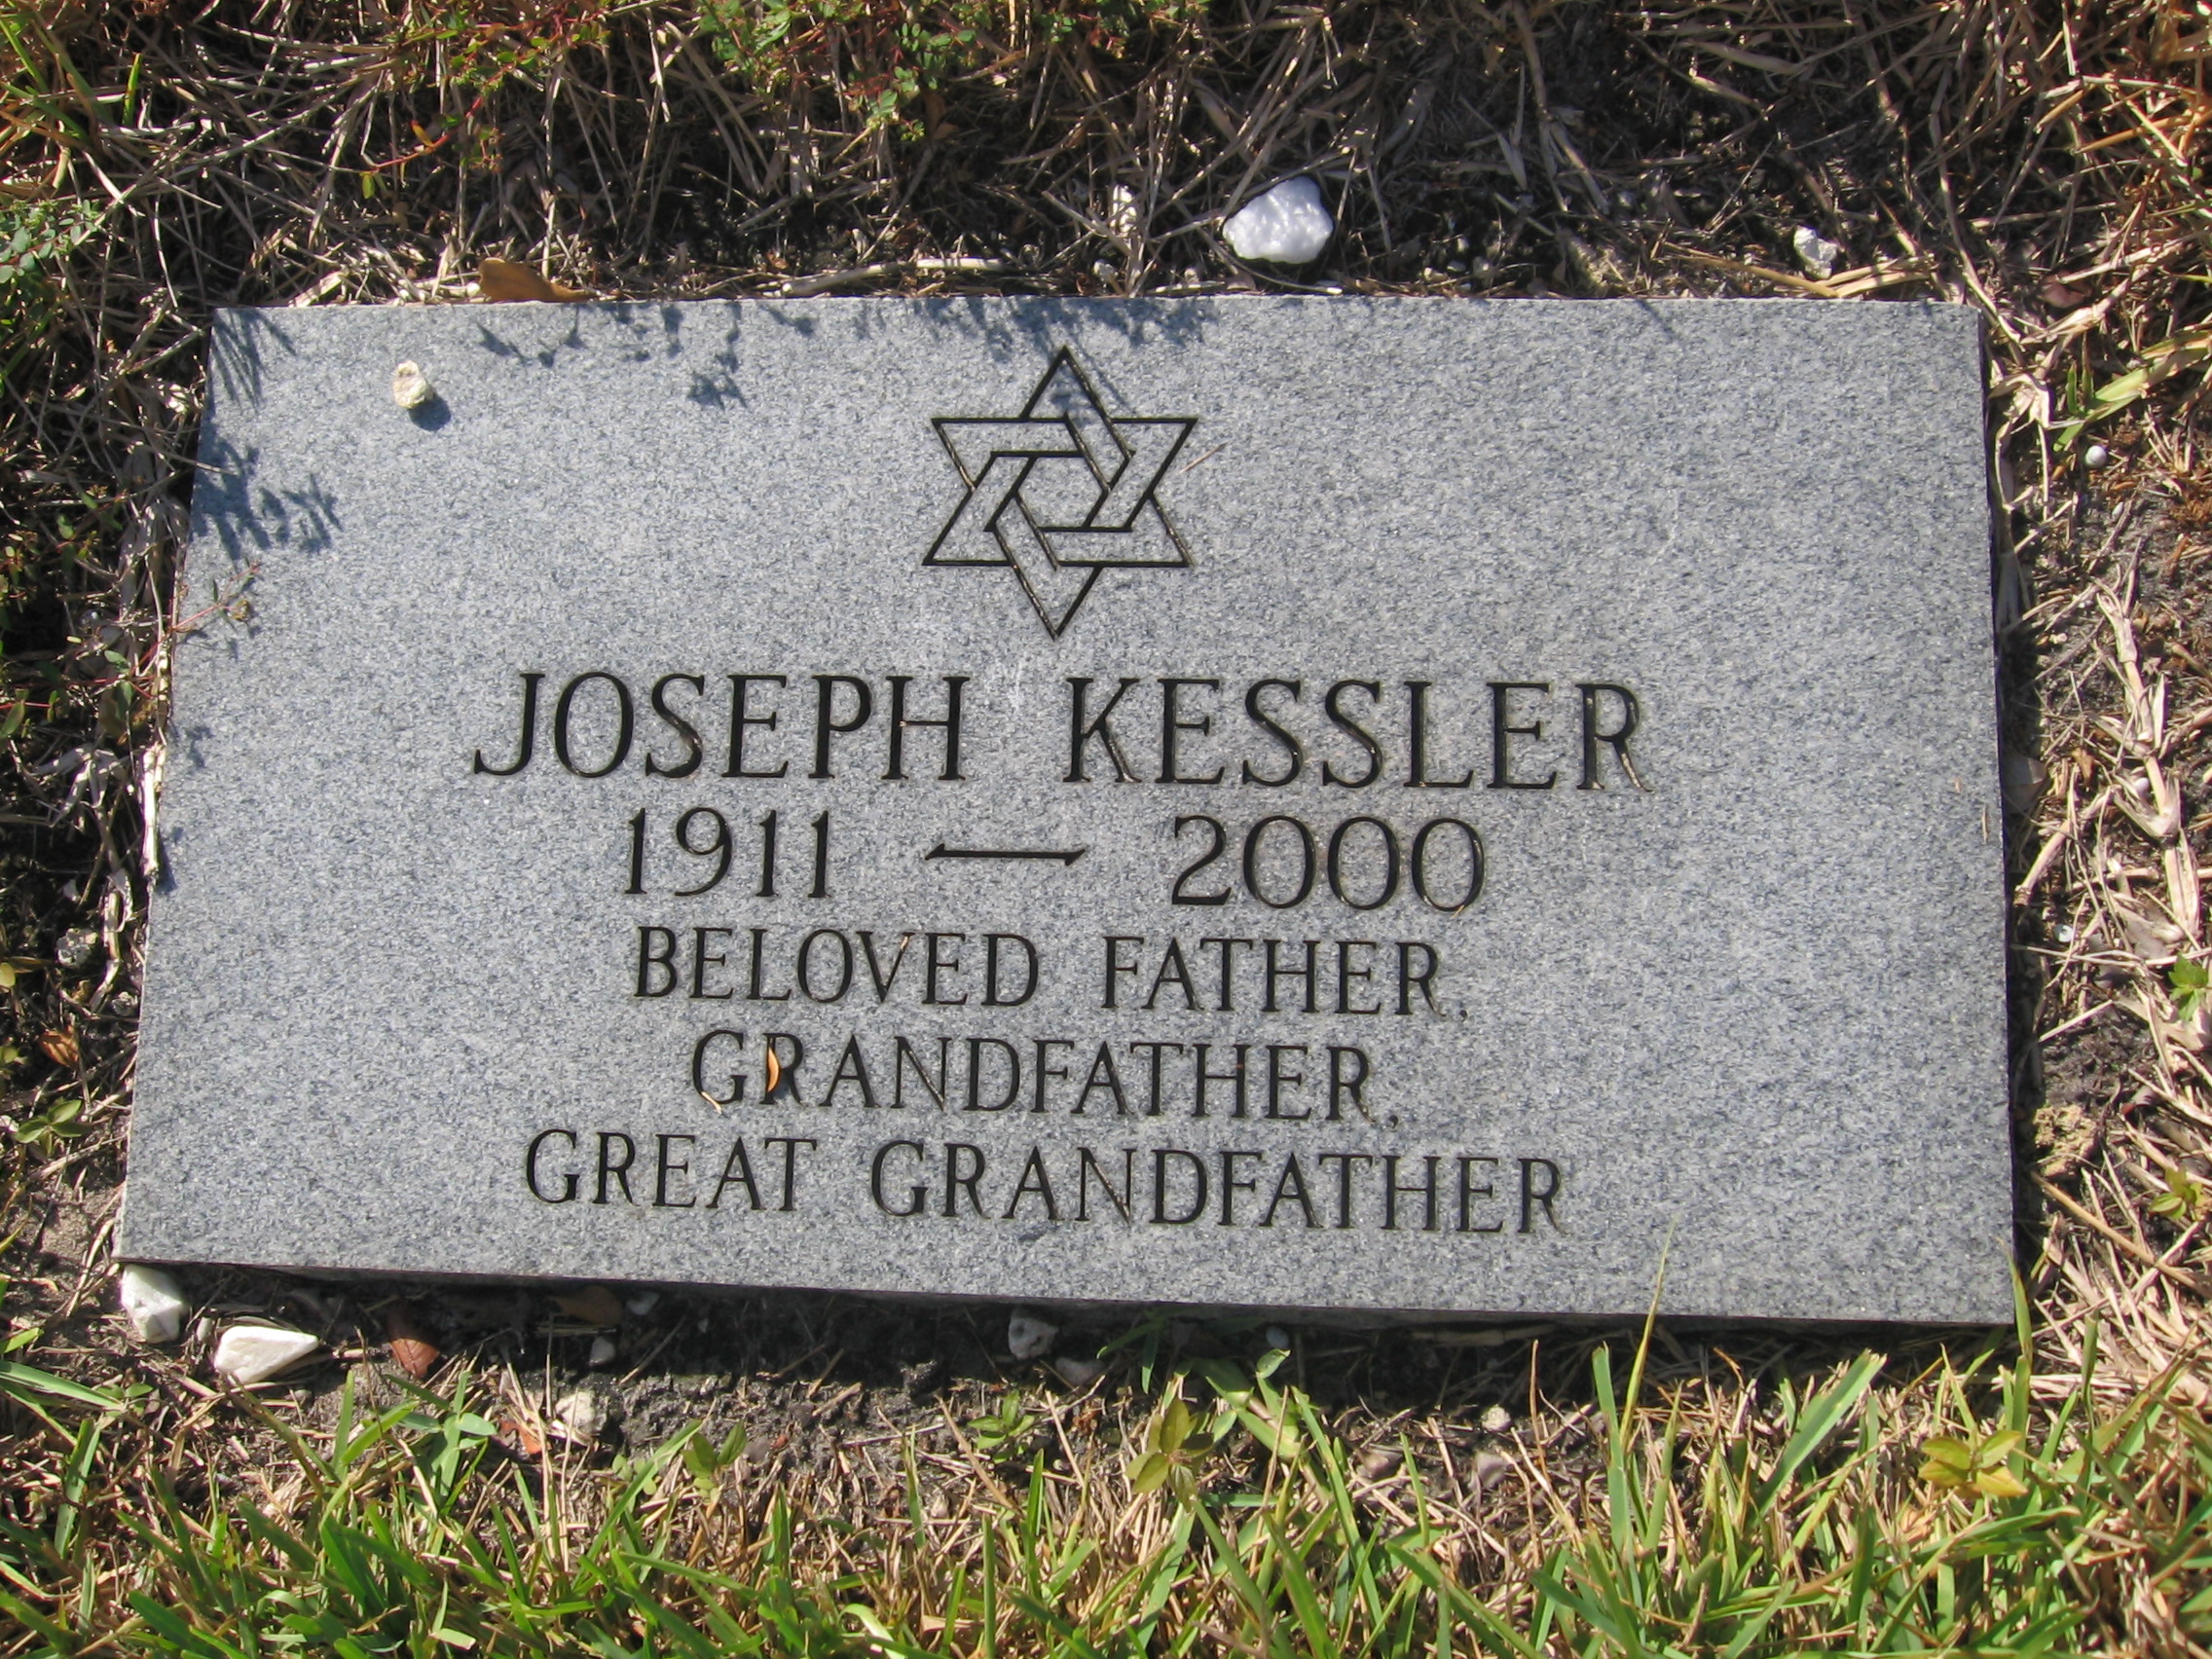 Joseph Kessler